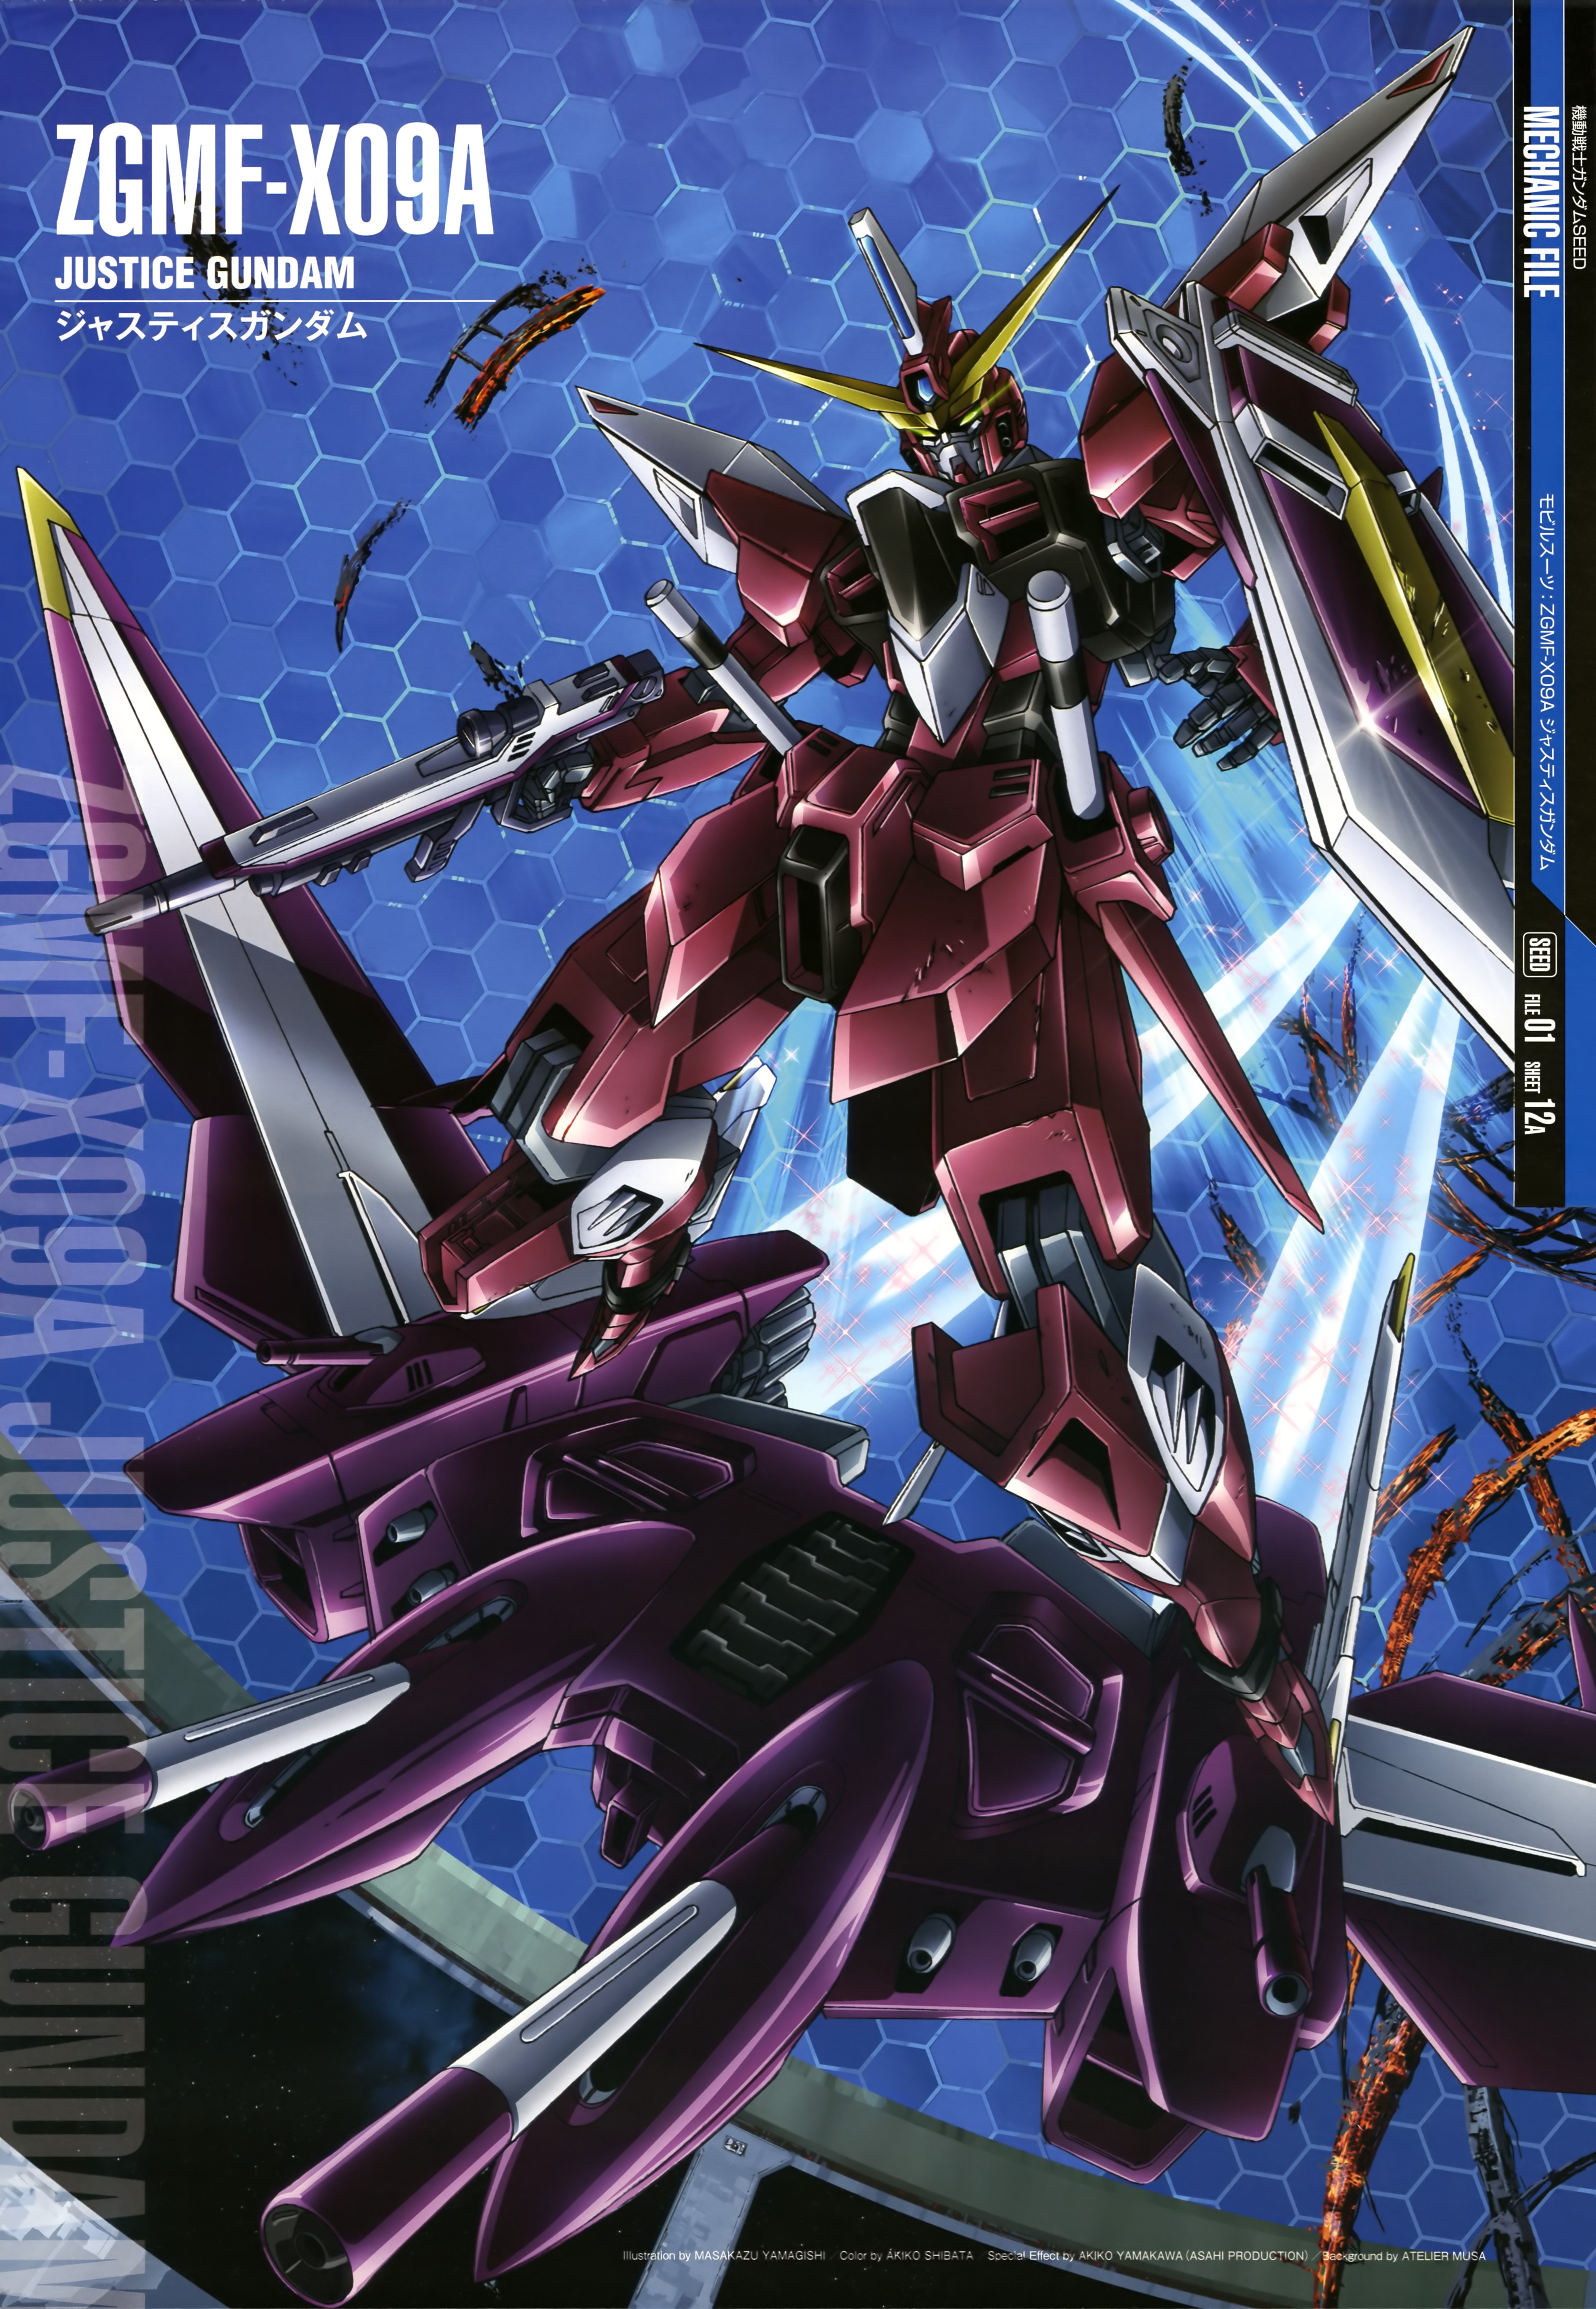 Justice Gundam Mobile Suit Gundam Seed Anime Mech Gundam Super Robot Wars Artwork Digital Art Offici Wallpaper Resolution 3932x5687 Id Wallha Com